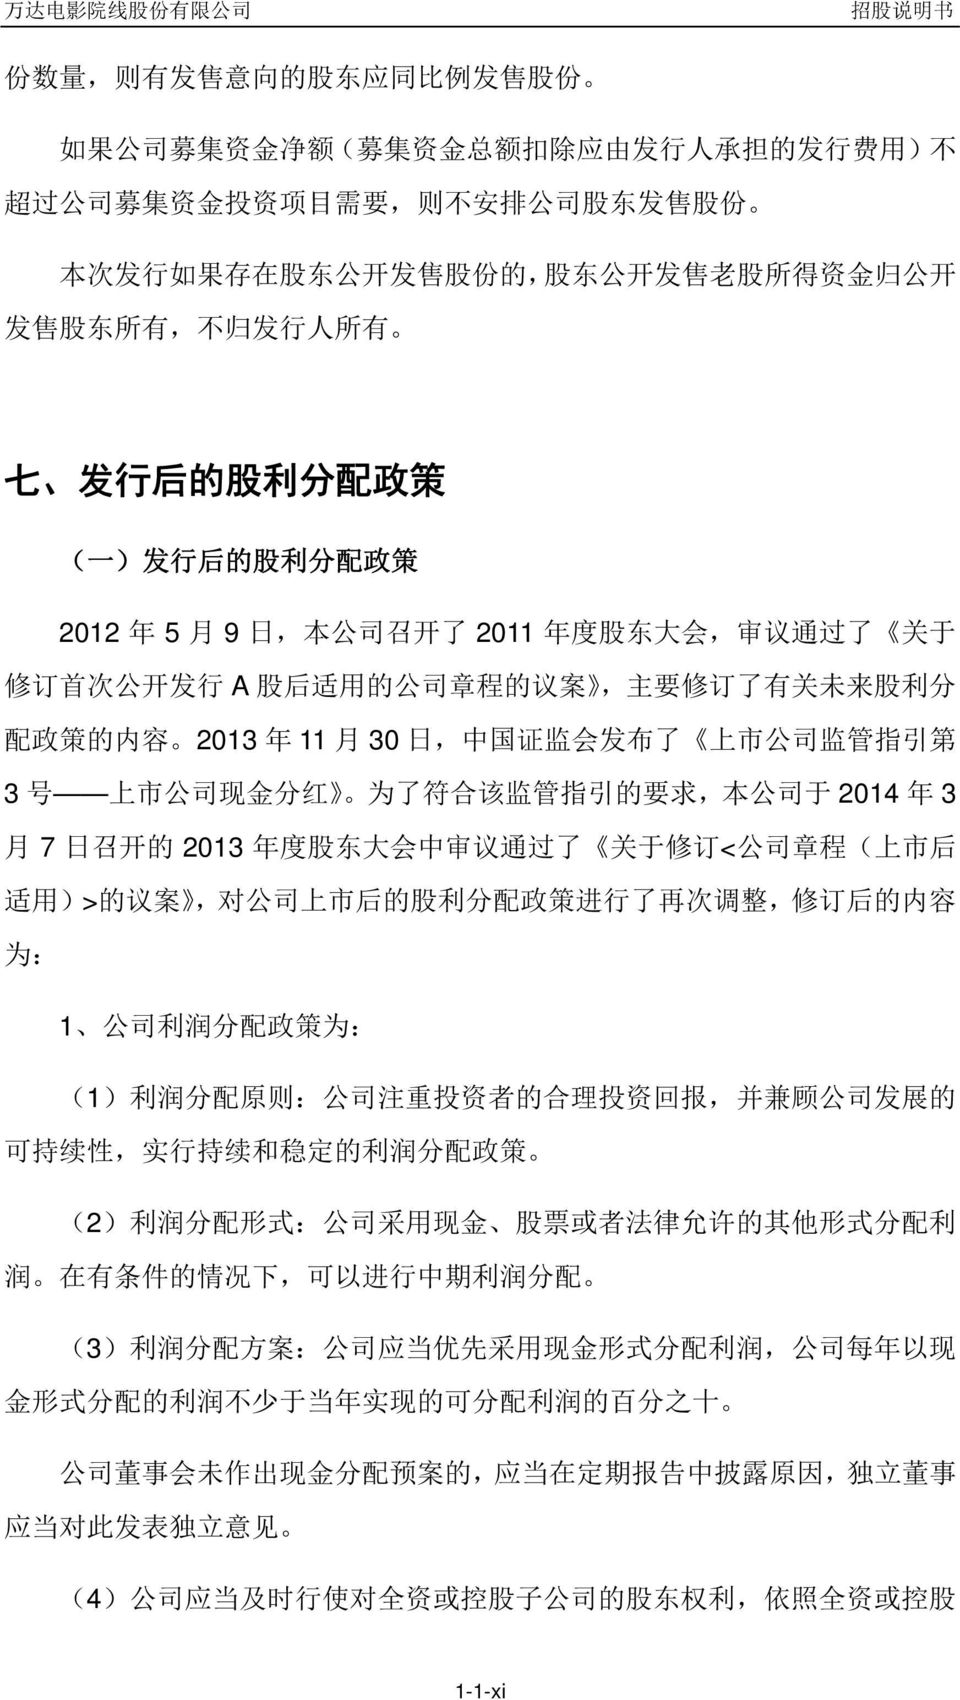 议 案, 主 要 修 订 了 有 关 未 来 股 利 分 配 政 策 的 内 容 2013 年 11 月 30 日, 中 国 证 监 会 发 布 了 上 市 公 司 监 管 指 引 第 3 号 上 市 公 司 现 金 分 红 为 了 符 合 该 监 管 指 引 的 要 求, 本 公 司 于 2014 年 3 月 7 日 召 开 的 2013 年 度 股 东 大 会 中 审 议 通 过 了 关 于